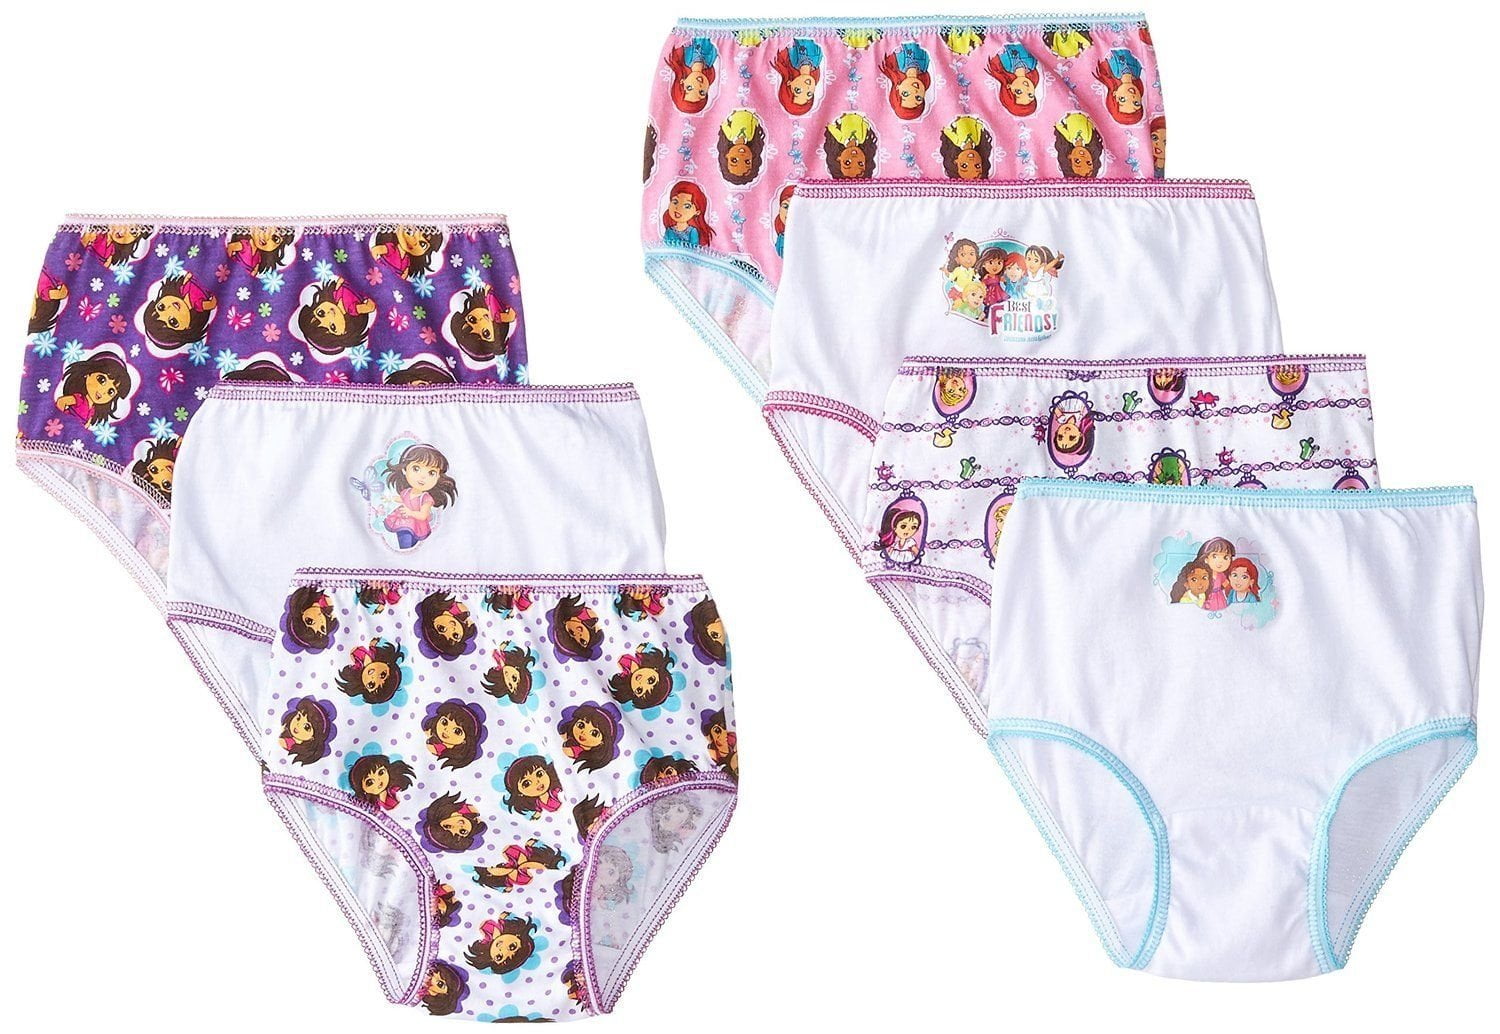 Toddler Girls' Dora the Explorer Underwear, 7-Pack